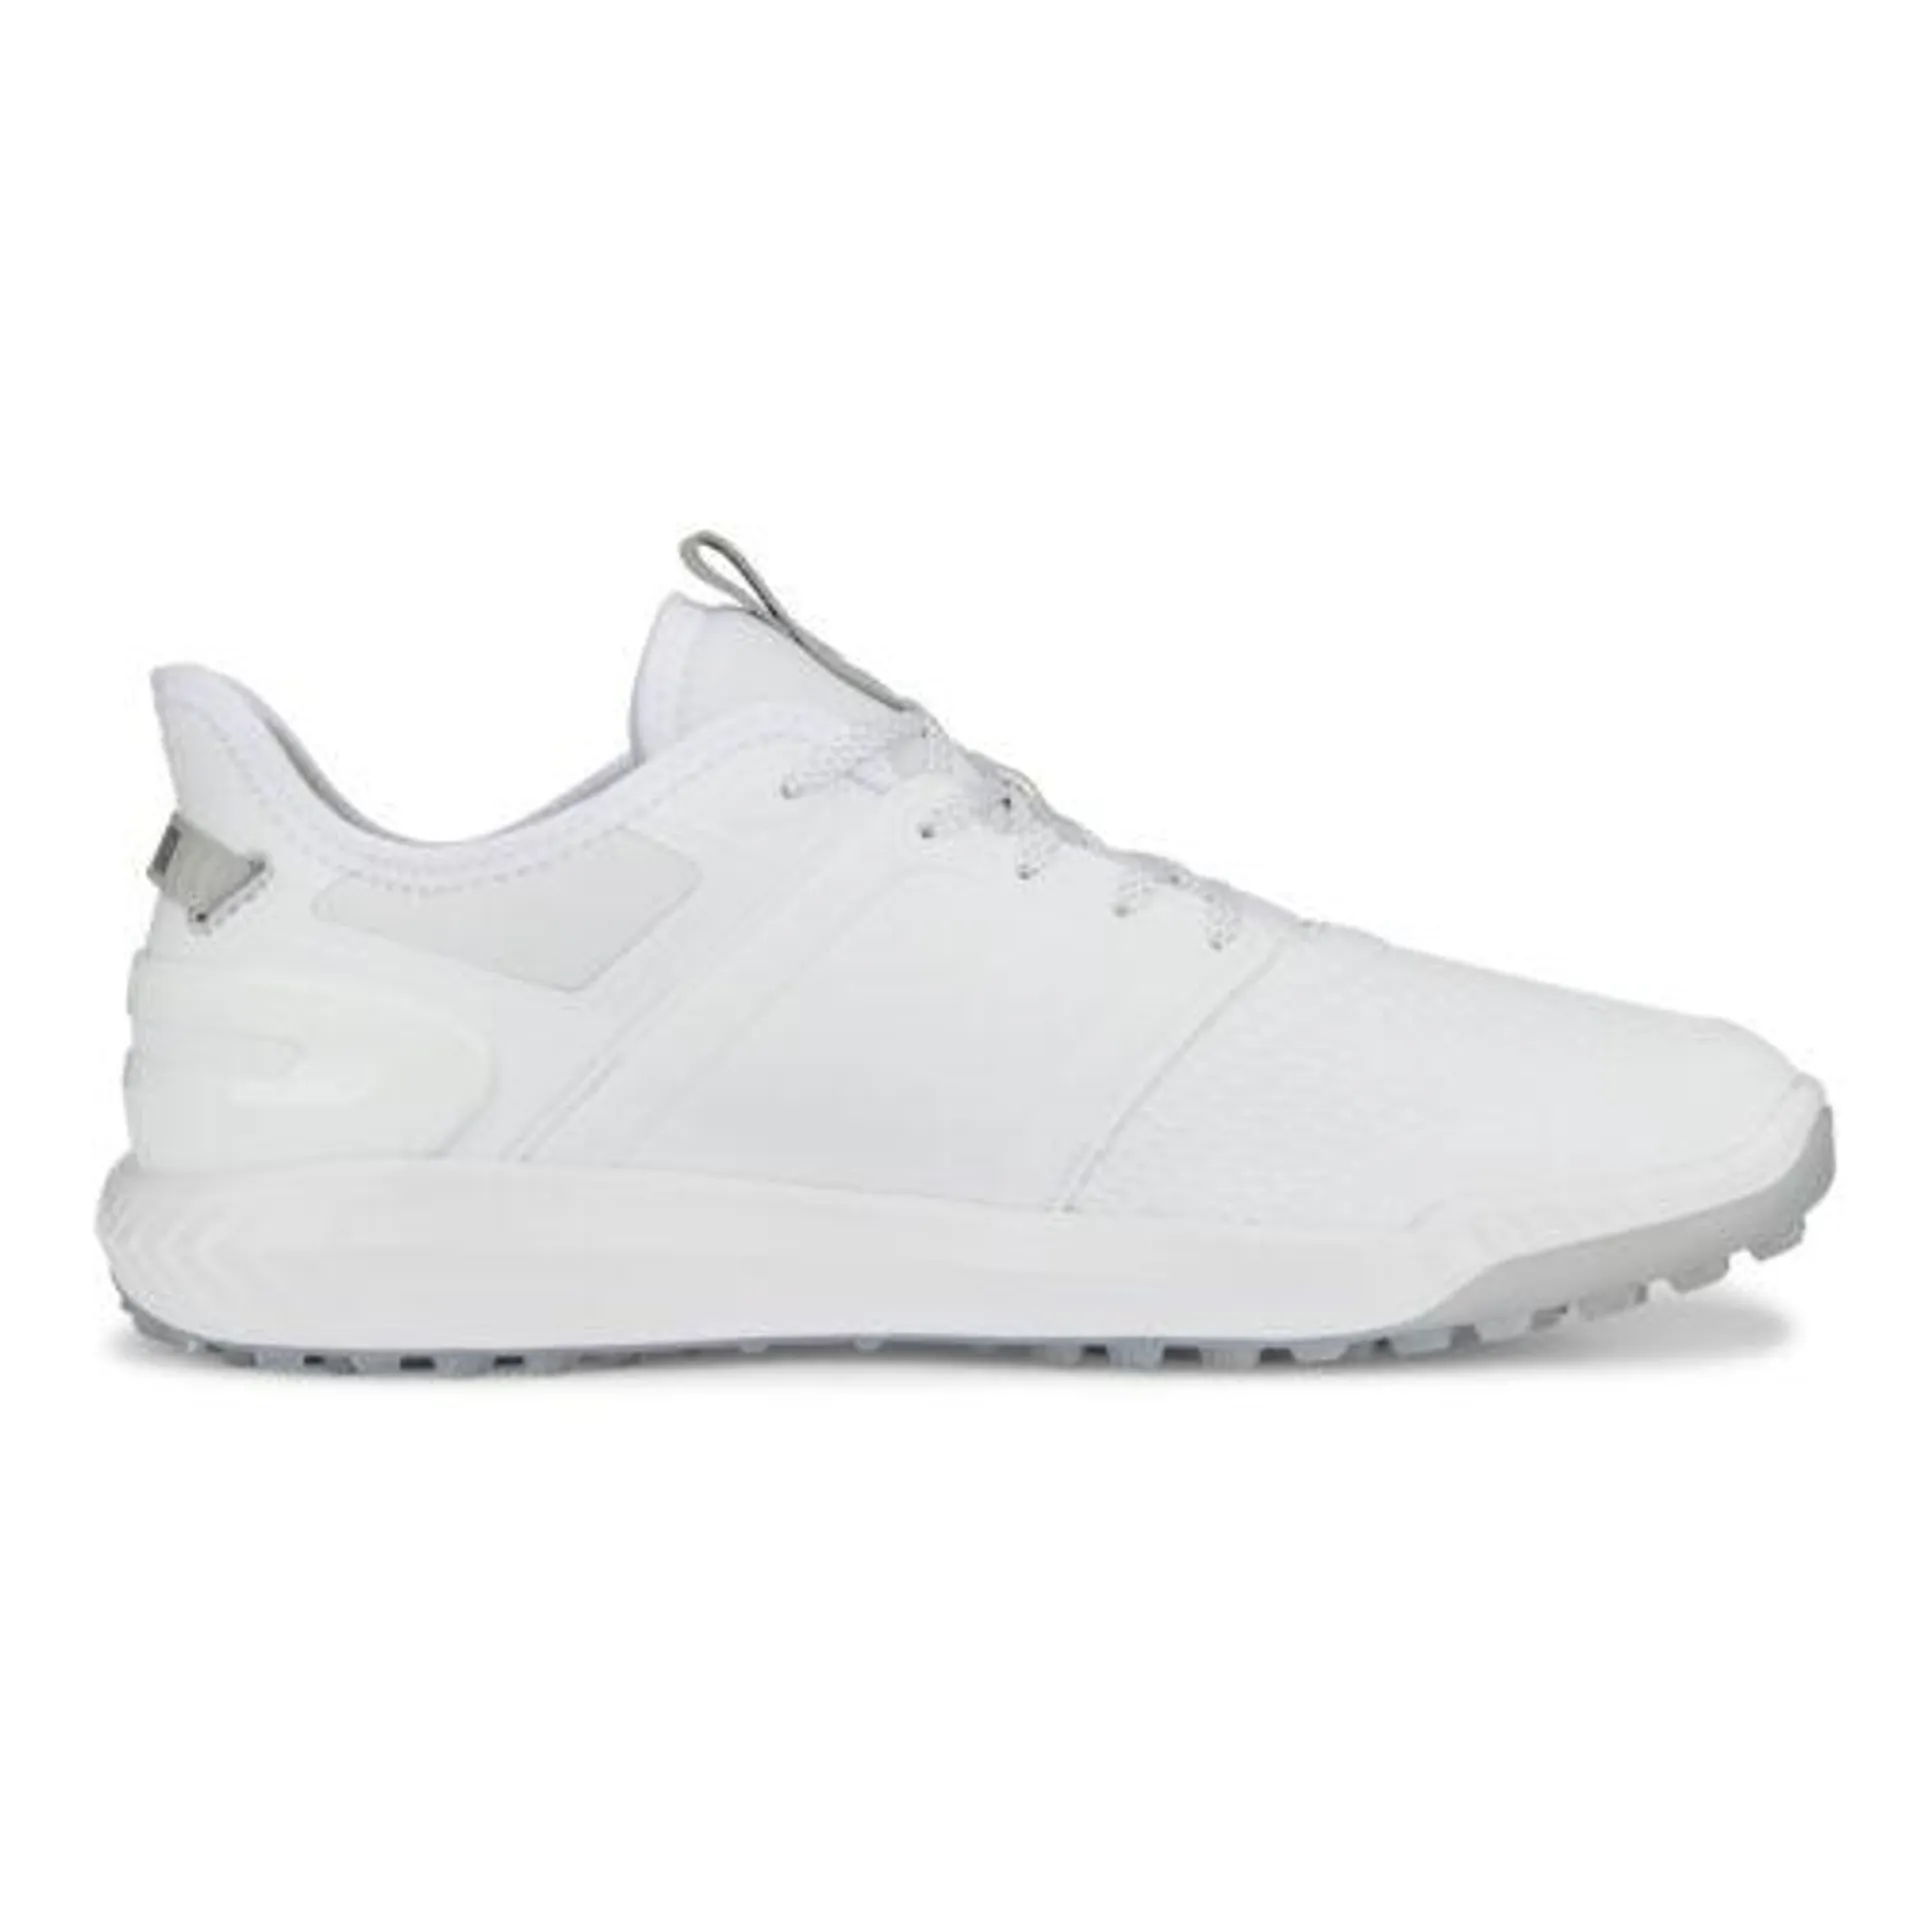 Puma Ignite Elevate Shoes – White/Silver 37607701